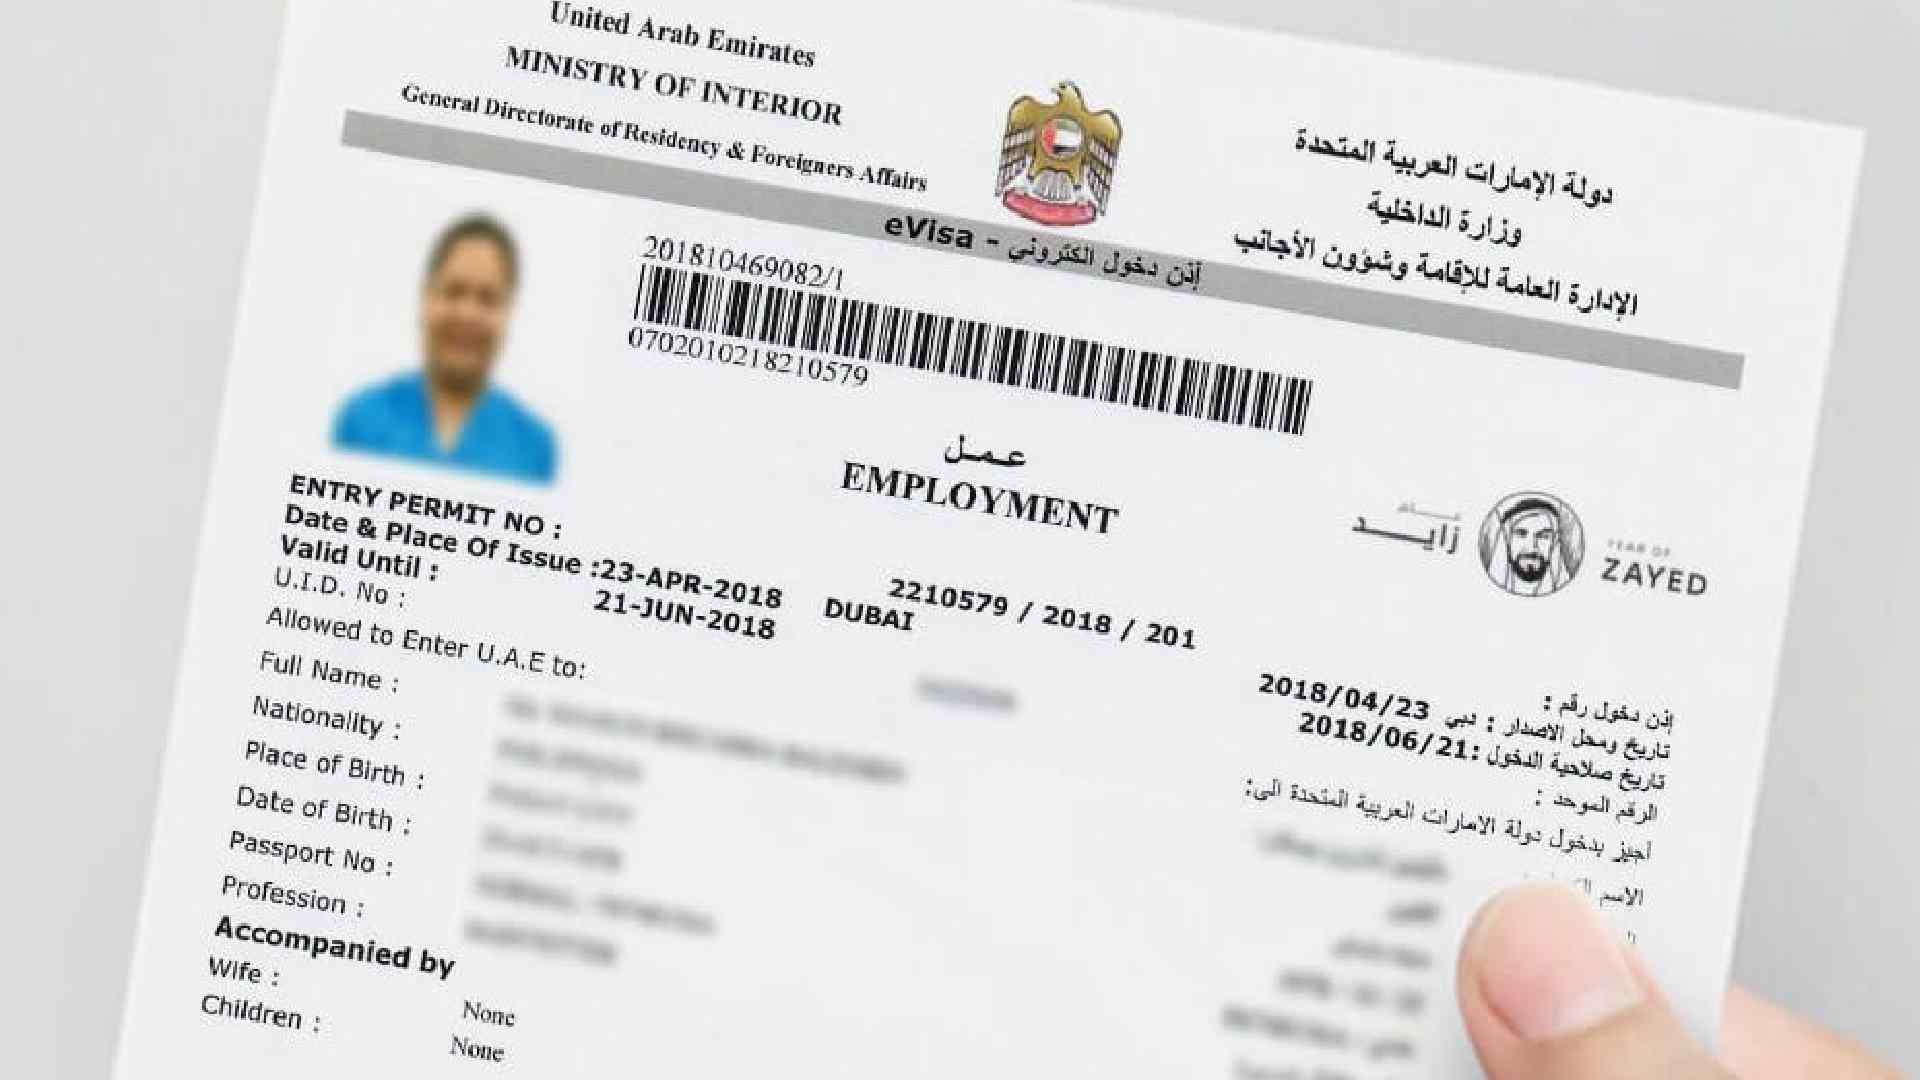 Uae visa. Entry permit Dubai. Виза ОАЭ. Электронный виза Дубай. Рабочая виза ОАЭ.